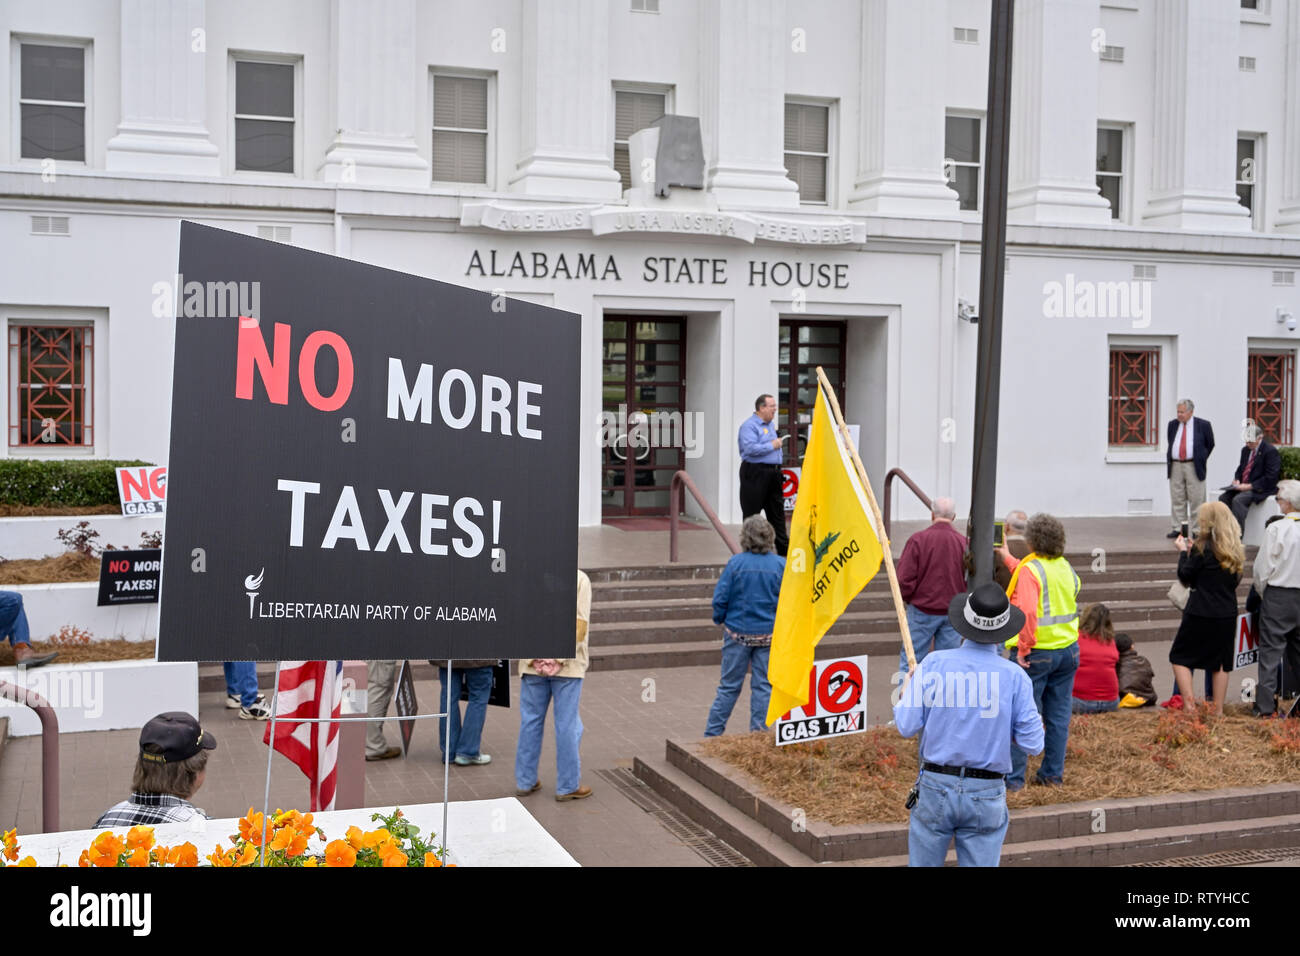 La gente escucha a un orador protestando por impuestos o un impuesto al gas con letreros en contra de más impuestos en el estado de Alabama Casa en Montgomery, Alabama, Estados Unidos. Foto de stock